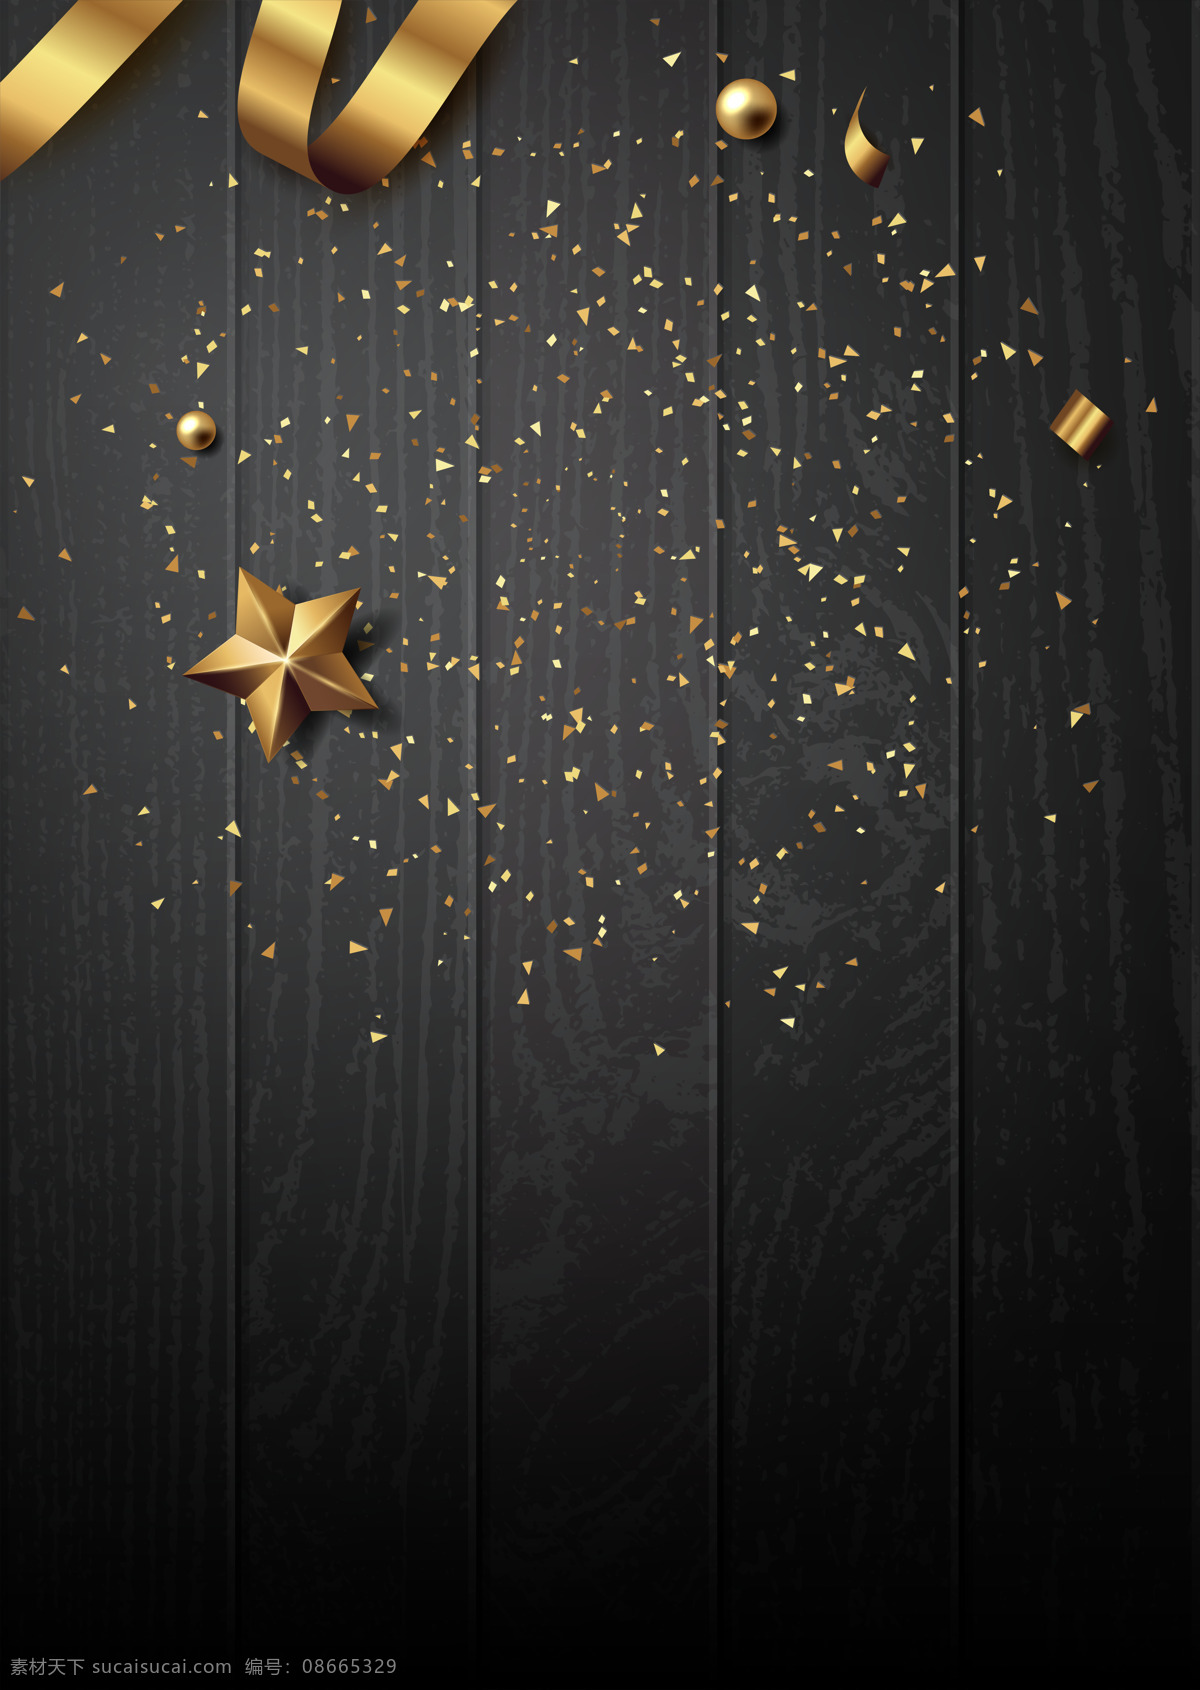 黑色 创意 个性 圣诞 背景 金球 木板 圣诞节 丝带 碎金 星星